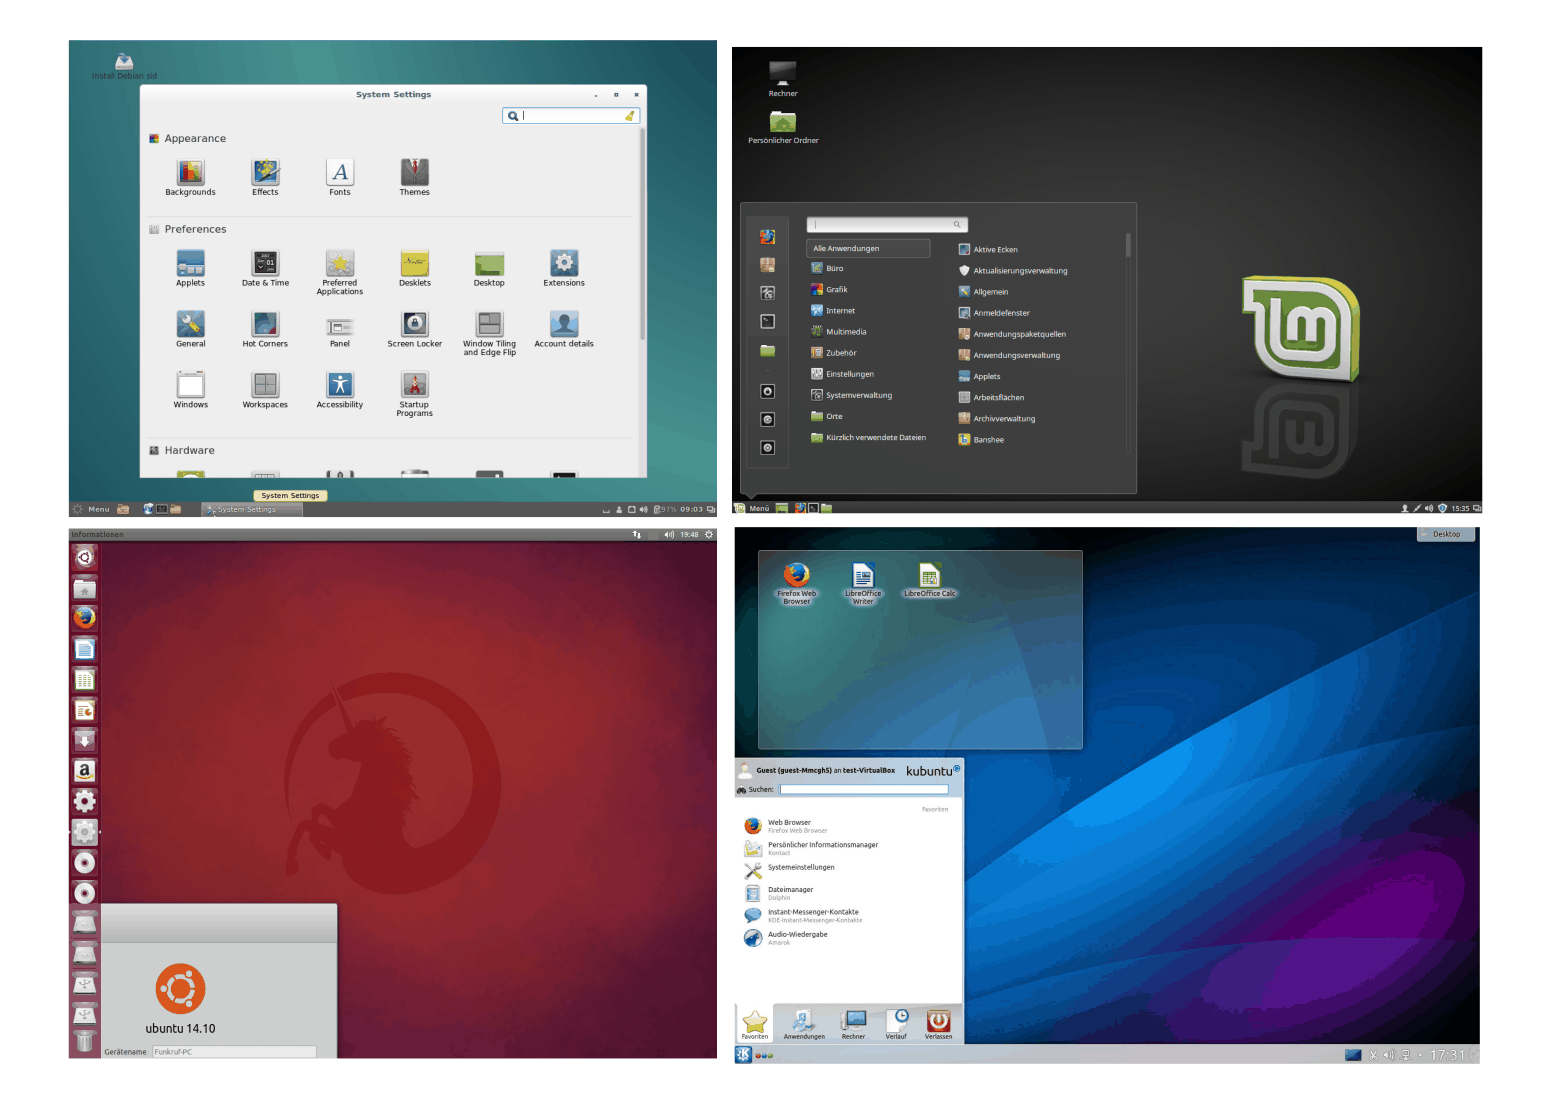 _images/linux-desktops.png